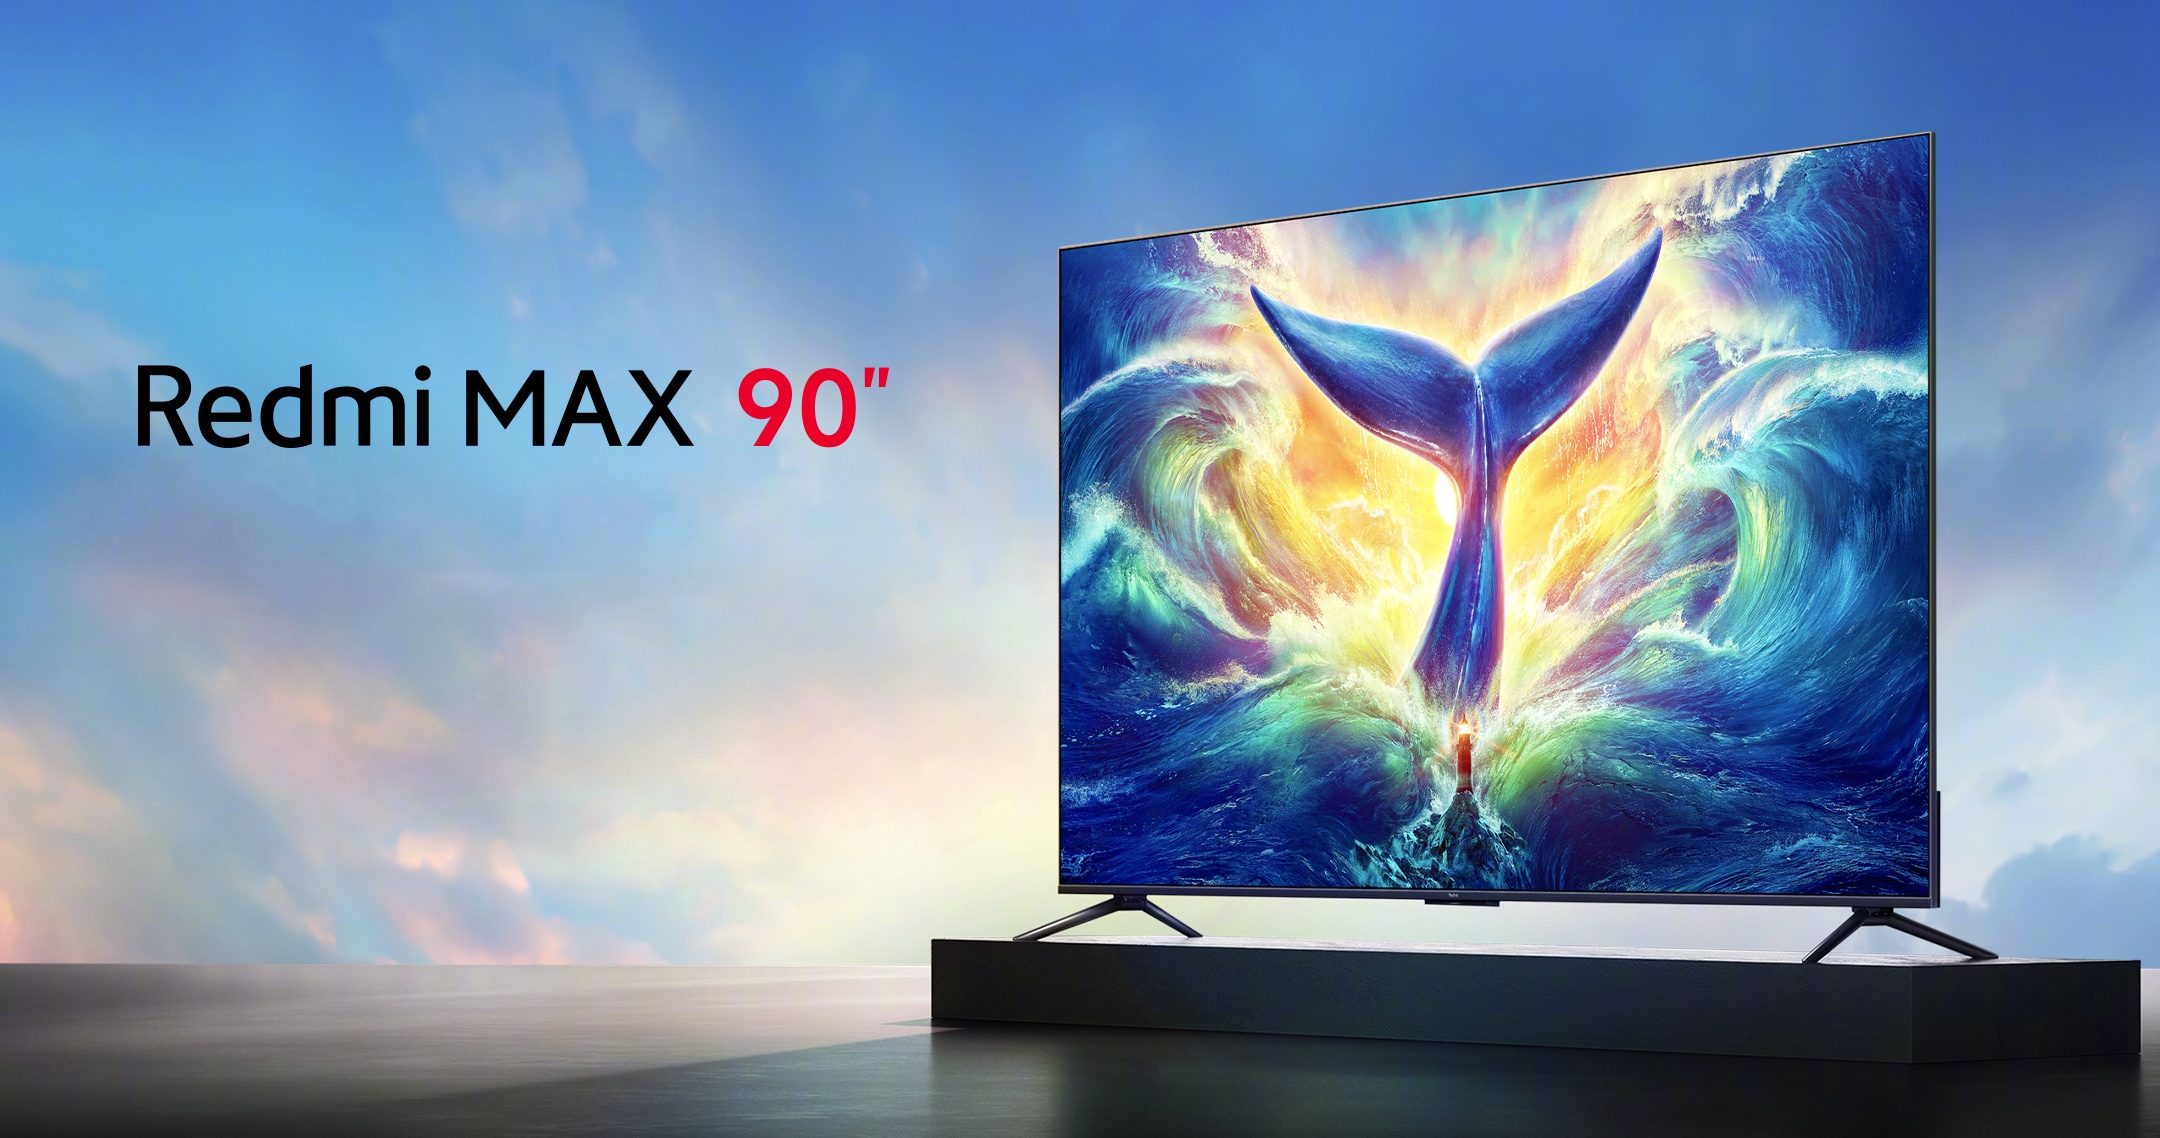 Xiaomi ha presentato una versione da 90 pollici della smart TV Redmi MAX con schermo a 144 Hz e un prezzo di 1150 dollari.